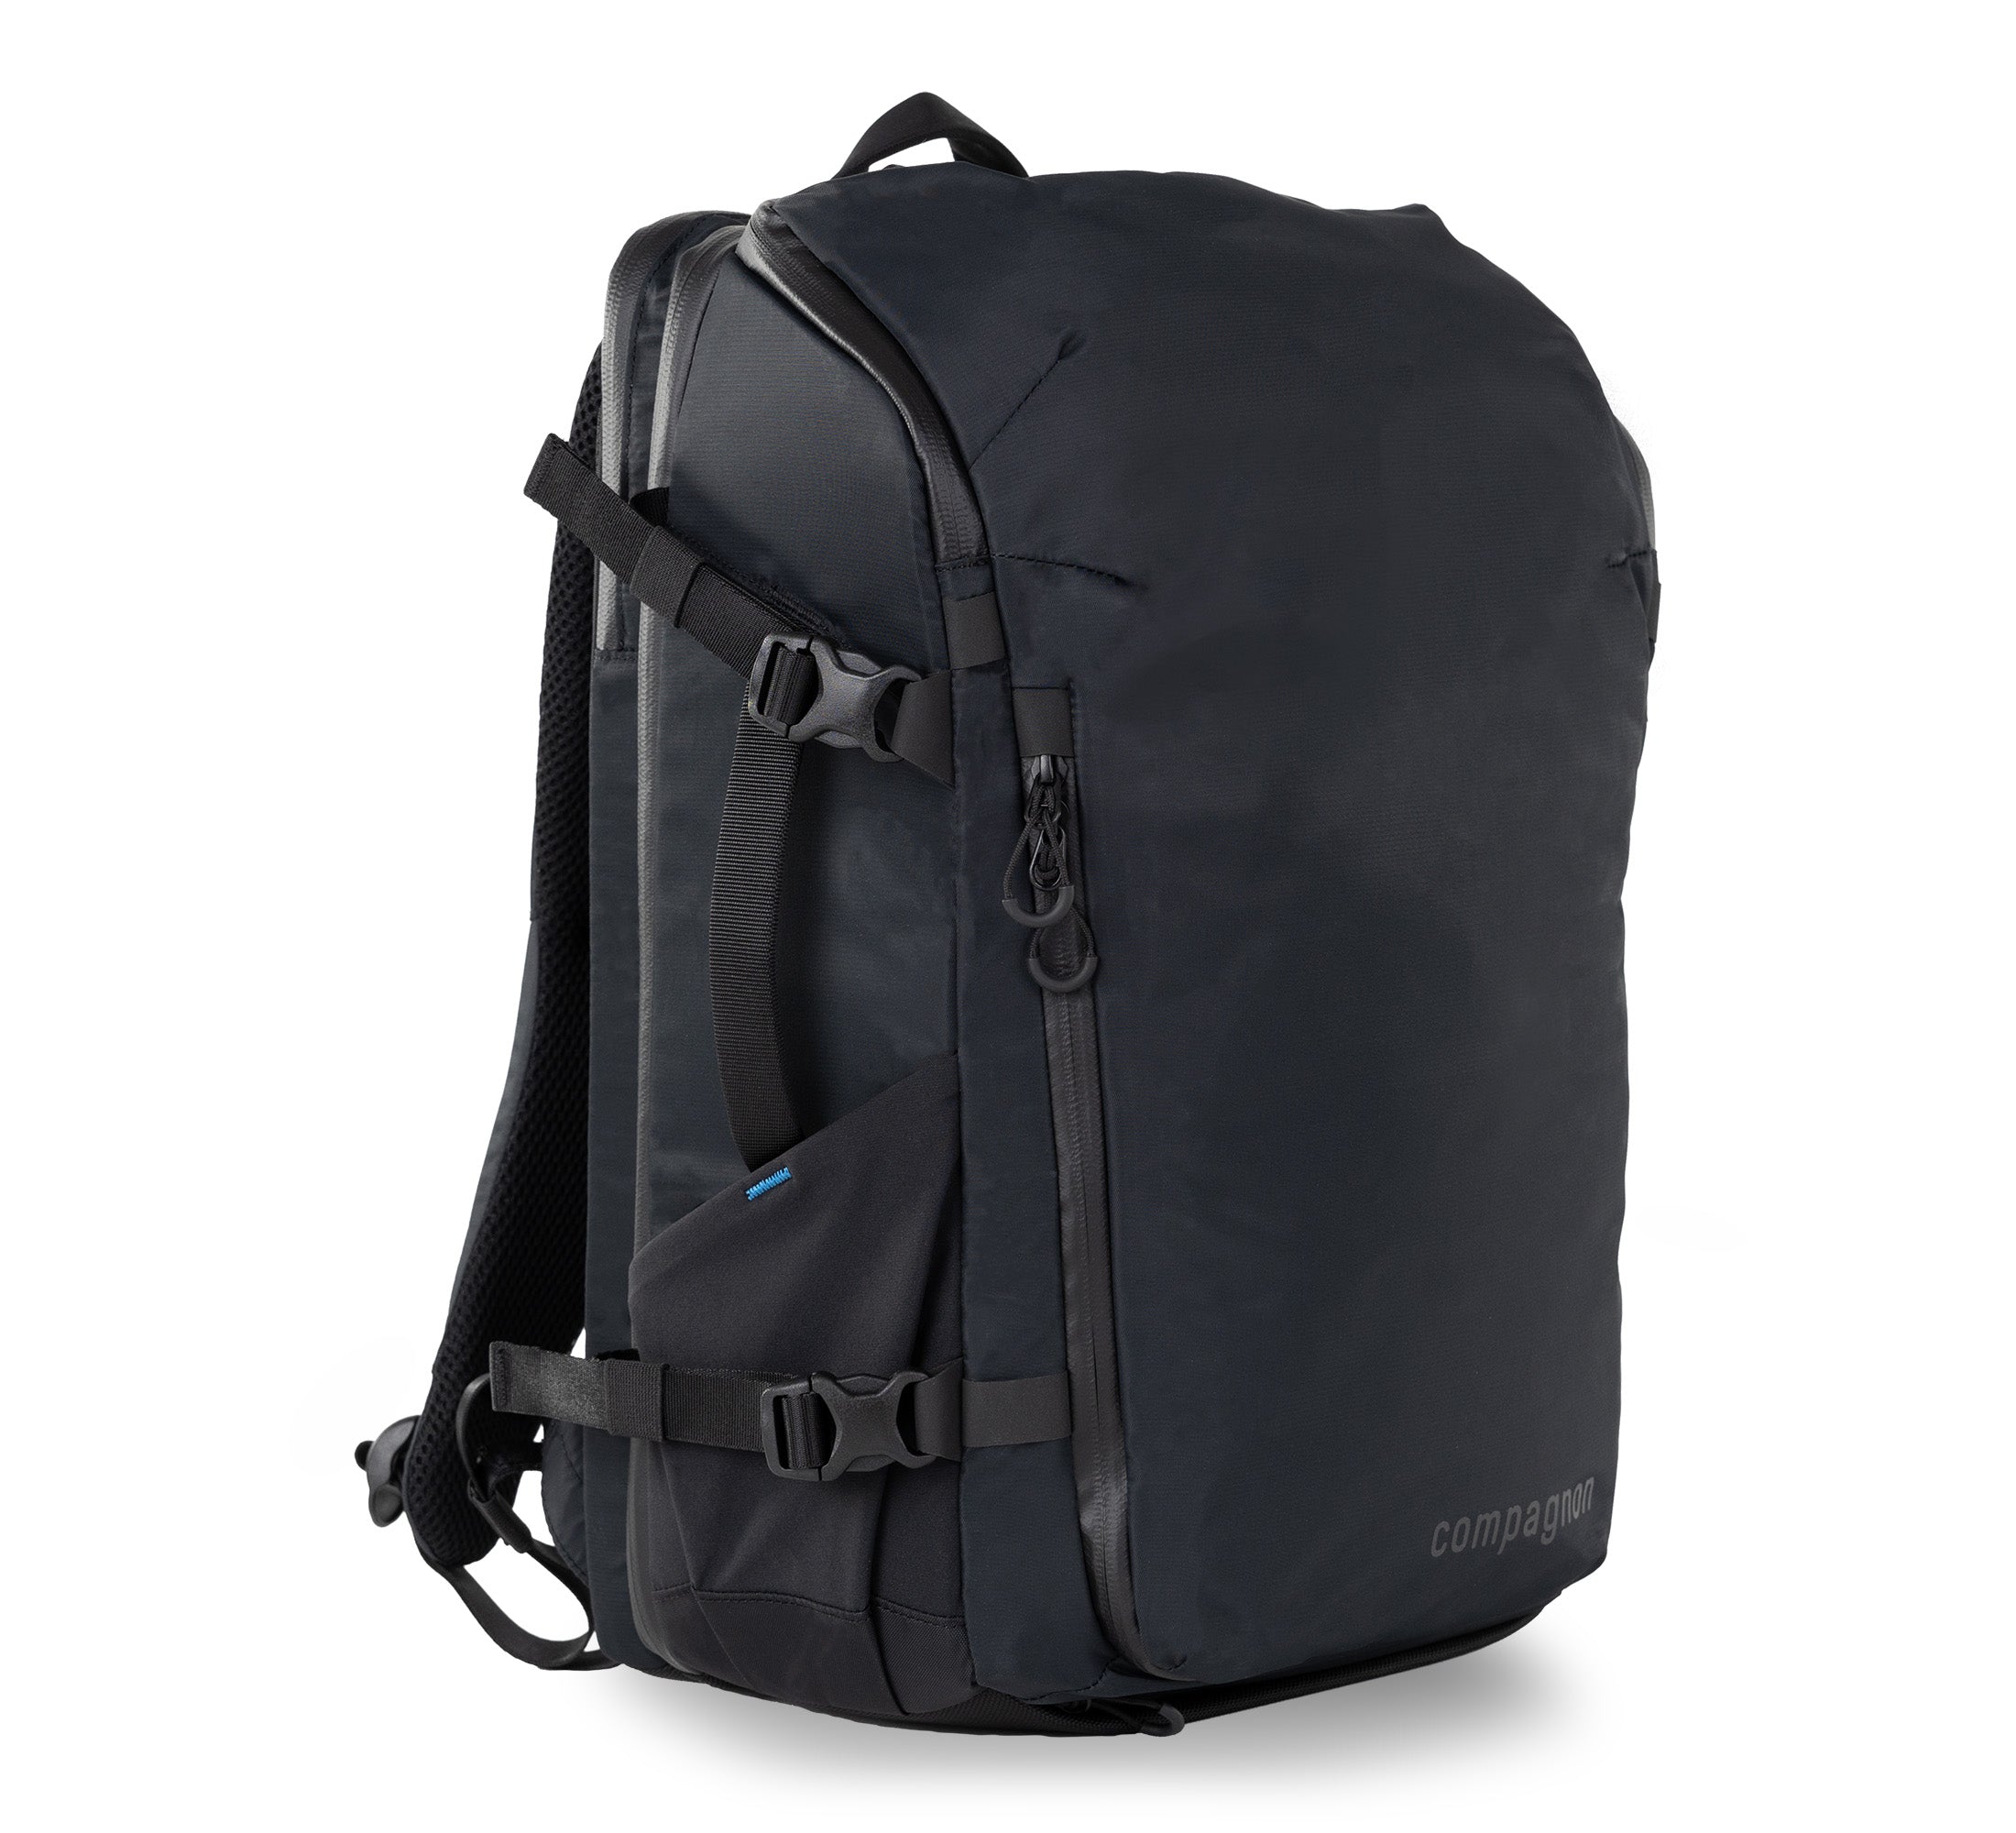 Adapt backpack 25L - Sac à dos uniquement